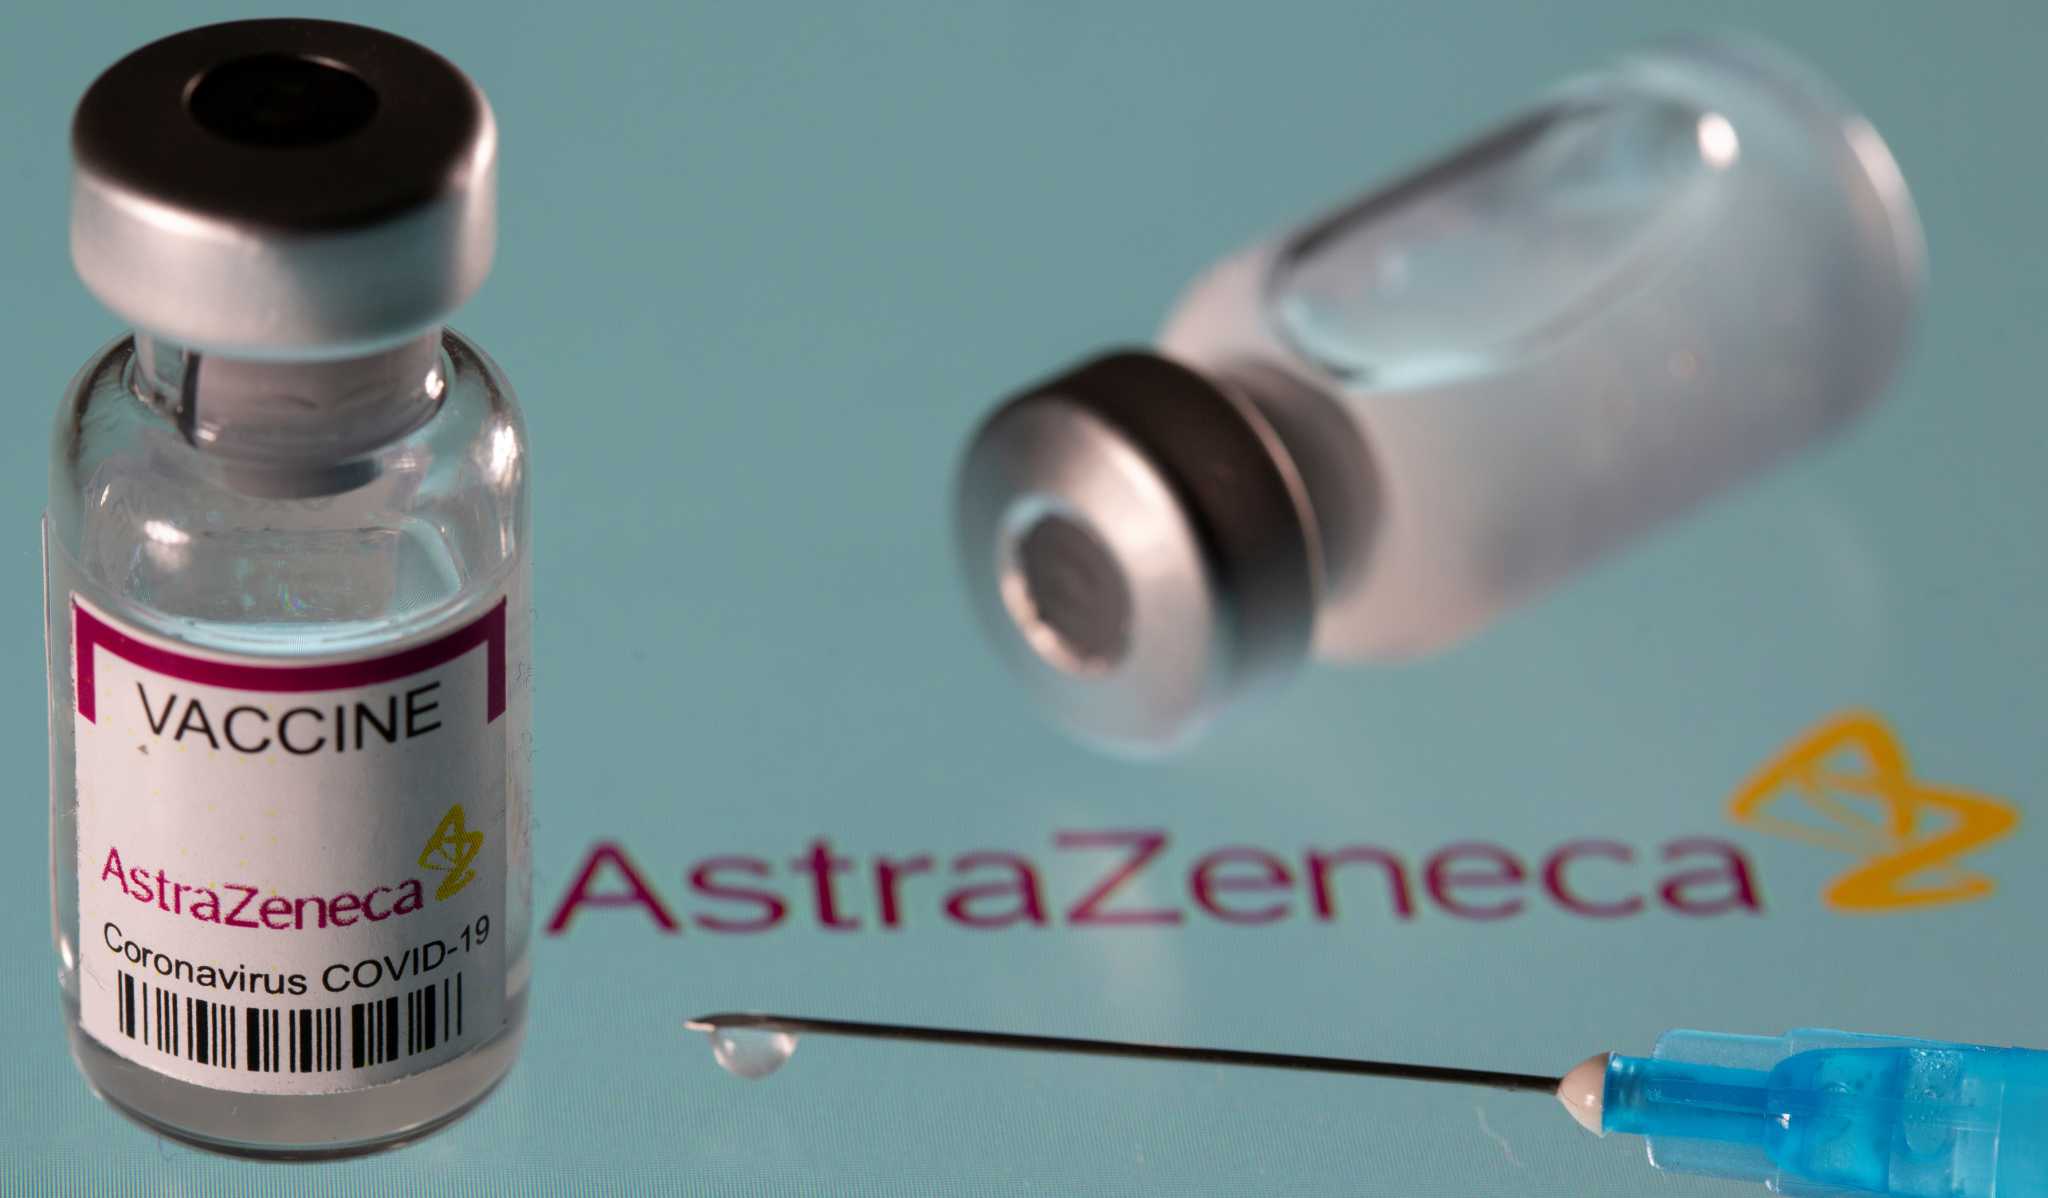 Ευρωπαϊκός Οργανισμός Φαρμάκων: Ενδείξεις σύνδεσης του εμβολίου της AstraZeneca με τις θρομβώσεις